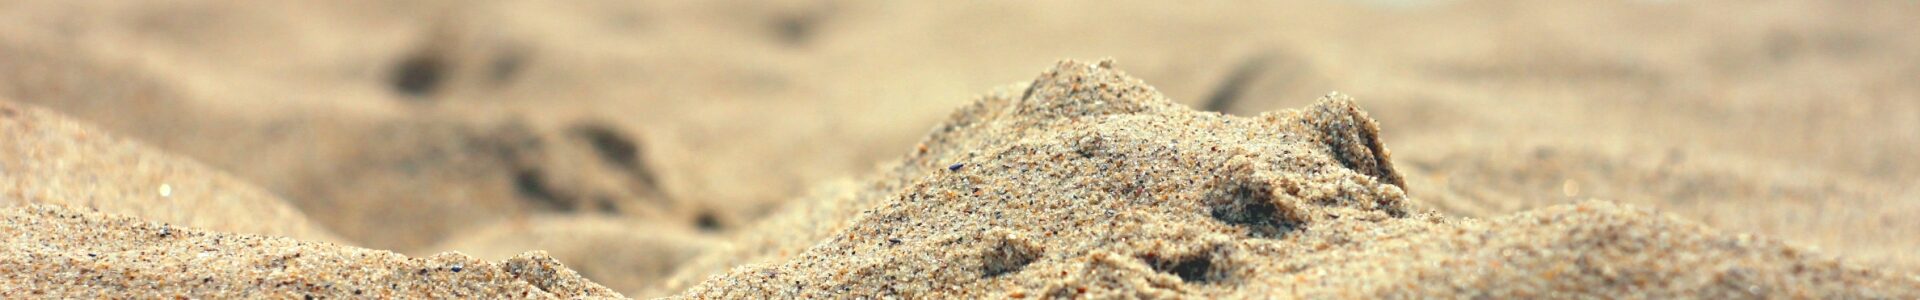 Объективная Матрица Сознания: Песчаный пляж Нашего Существования